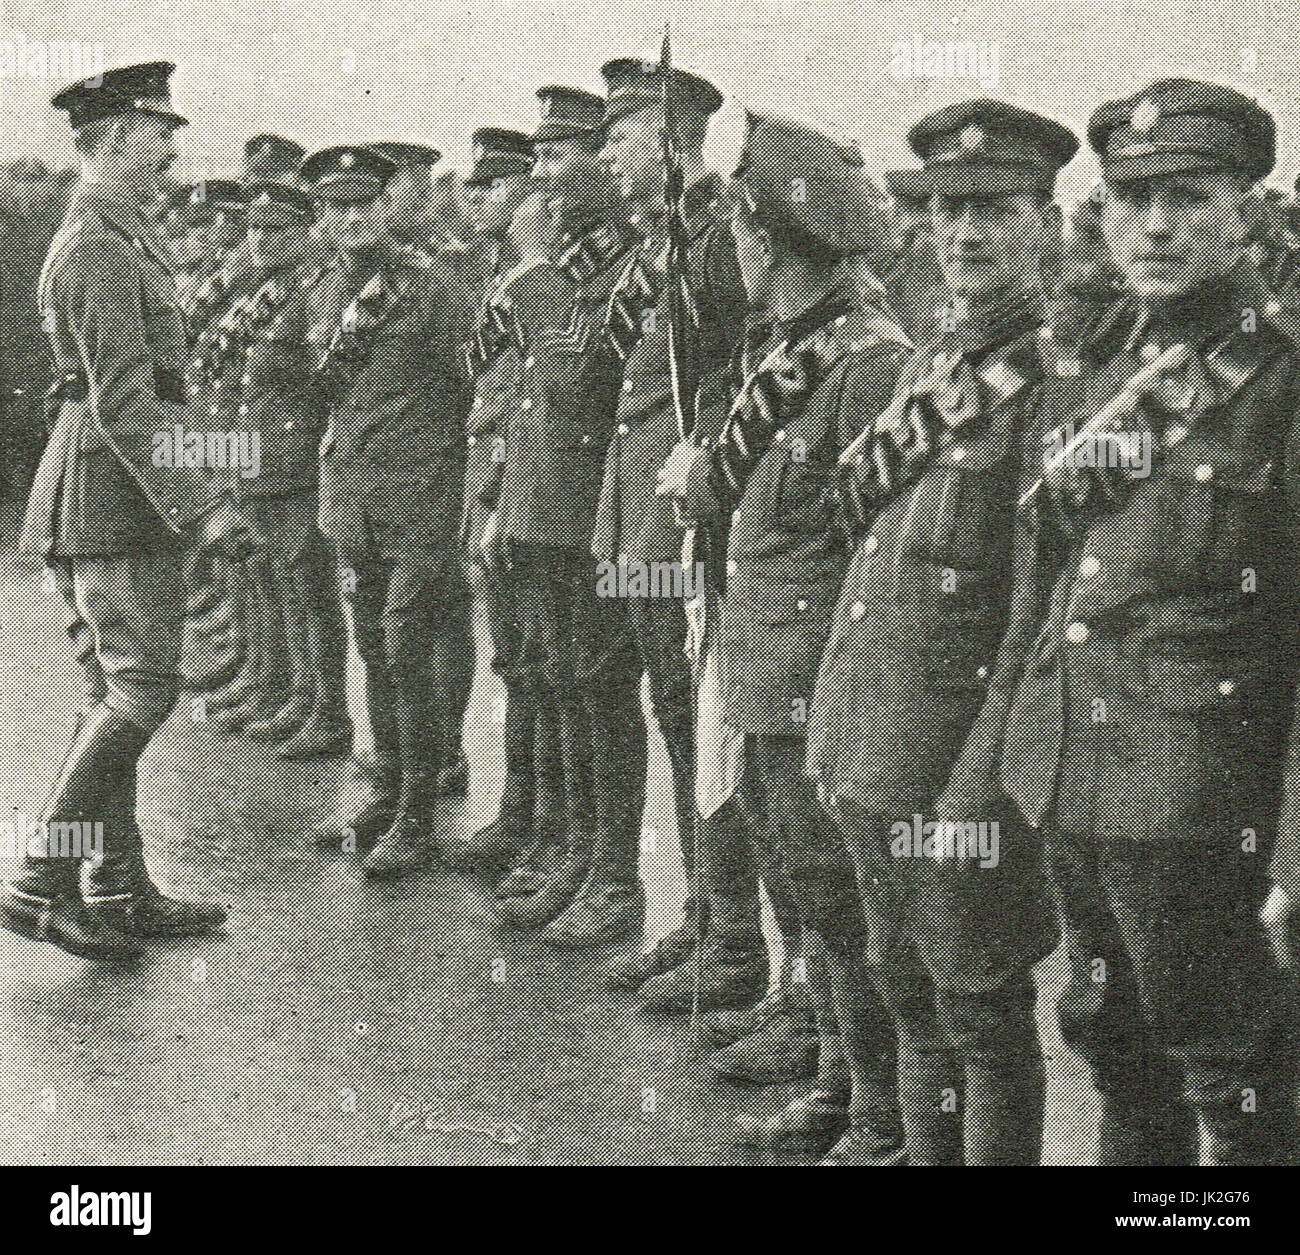 Lord Gort Adressierung demonstrierende Soldaten von der RASC Stockfoto